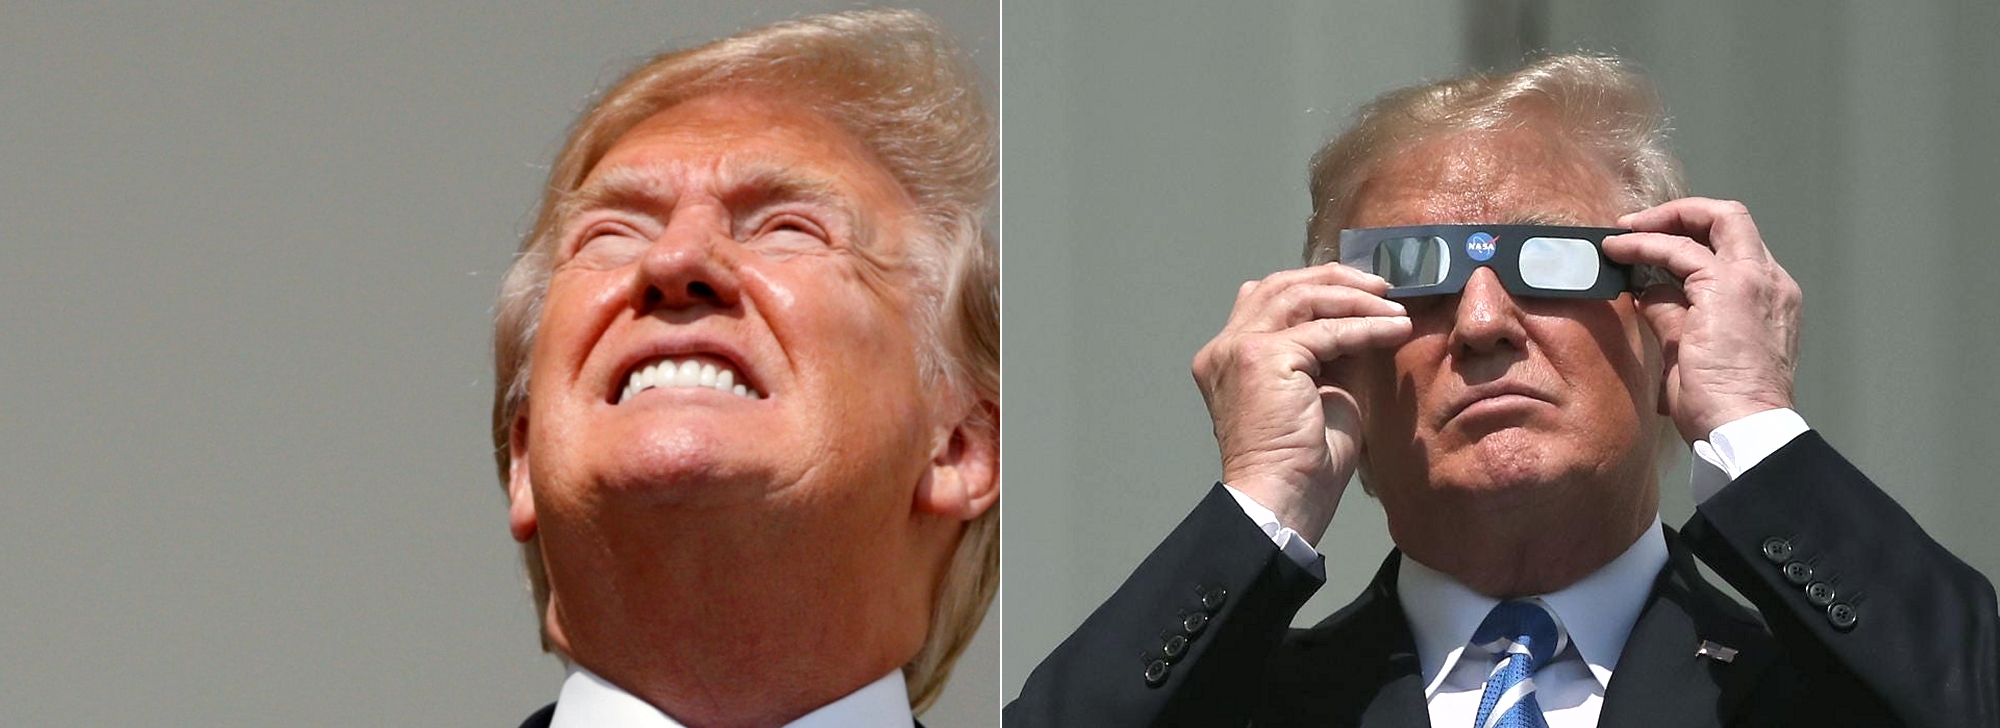 Trump eclipse.jpg